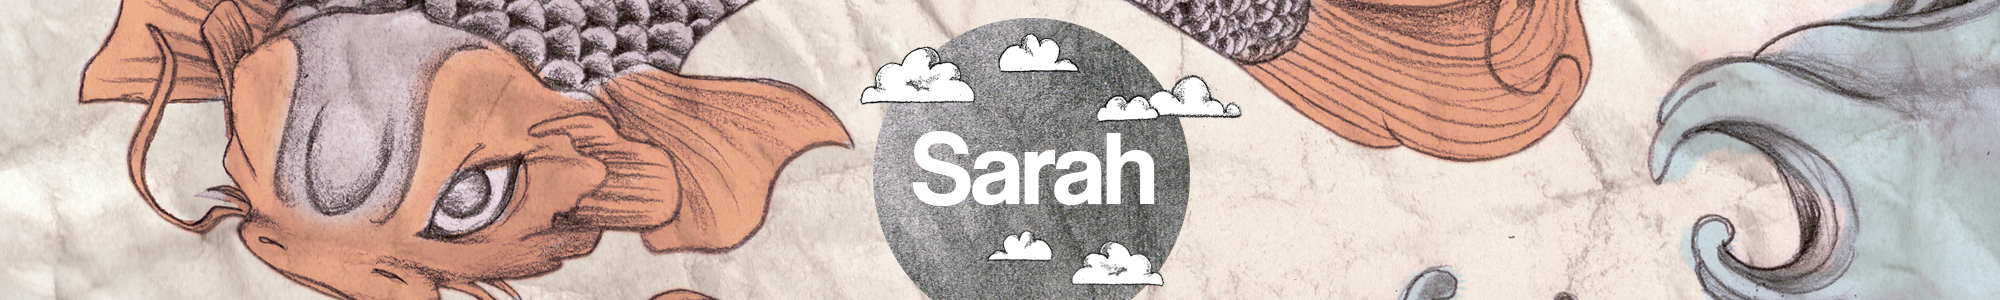 Sarah Makes Things